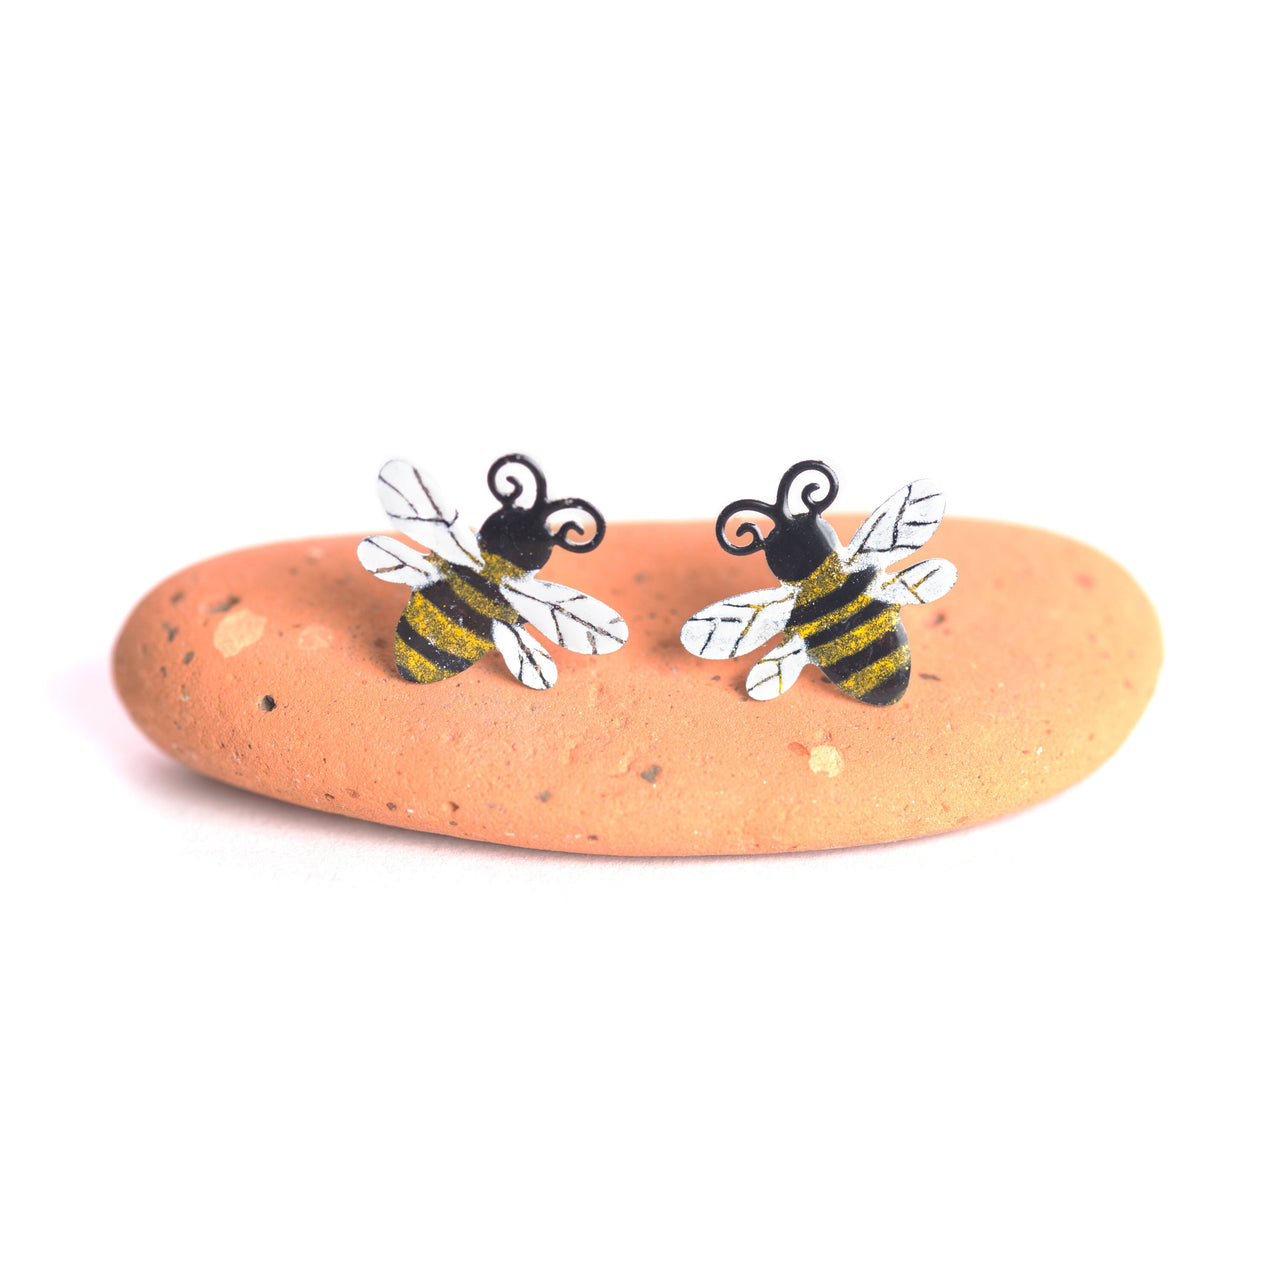 Bee Stud Earrings